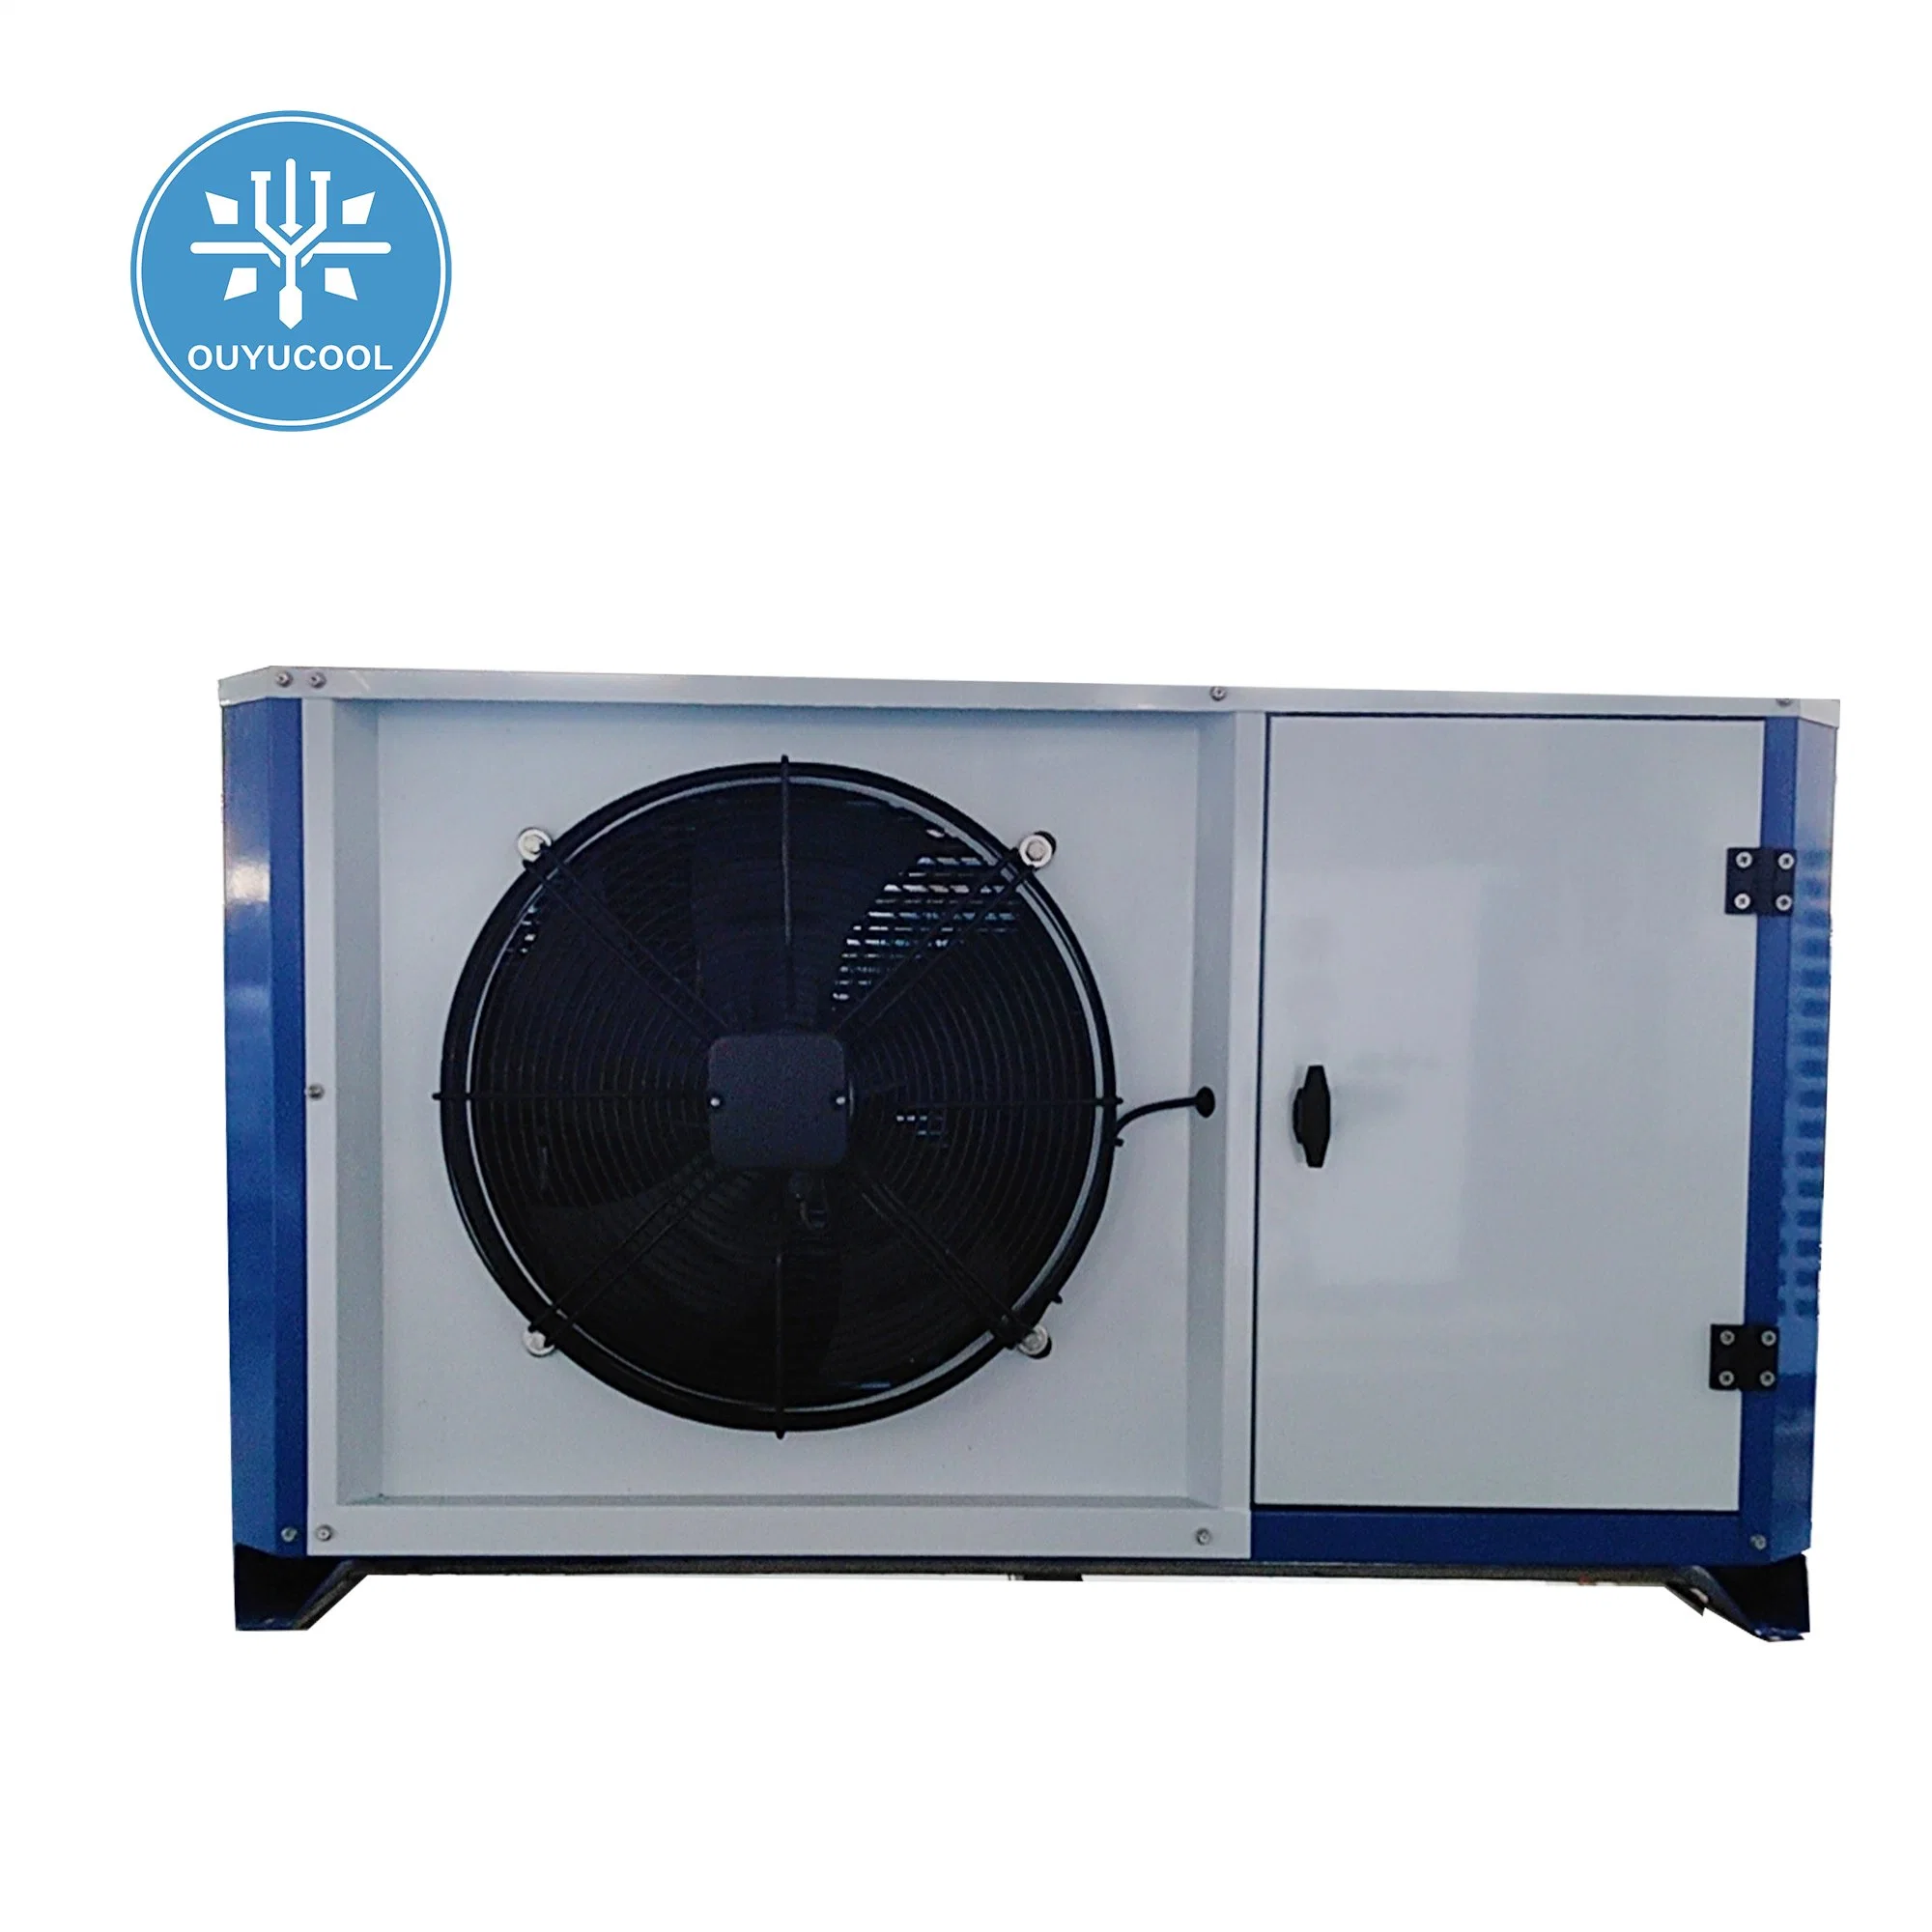 Холодильное оборудование с конденсацией и R404A Простота эксплуатации и технического обслуживания